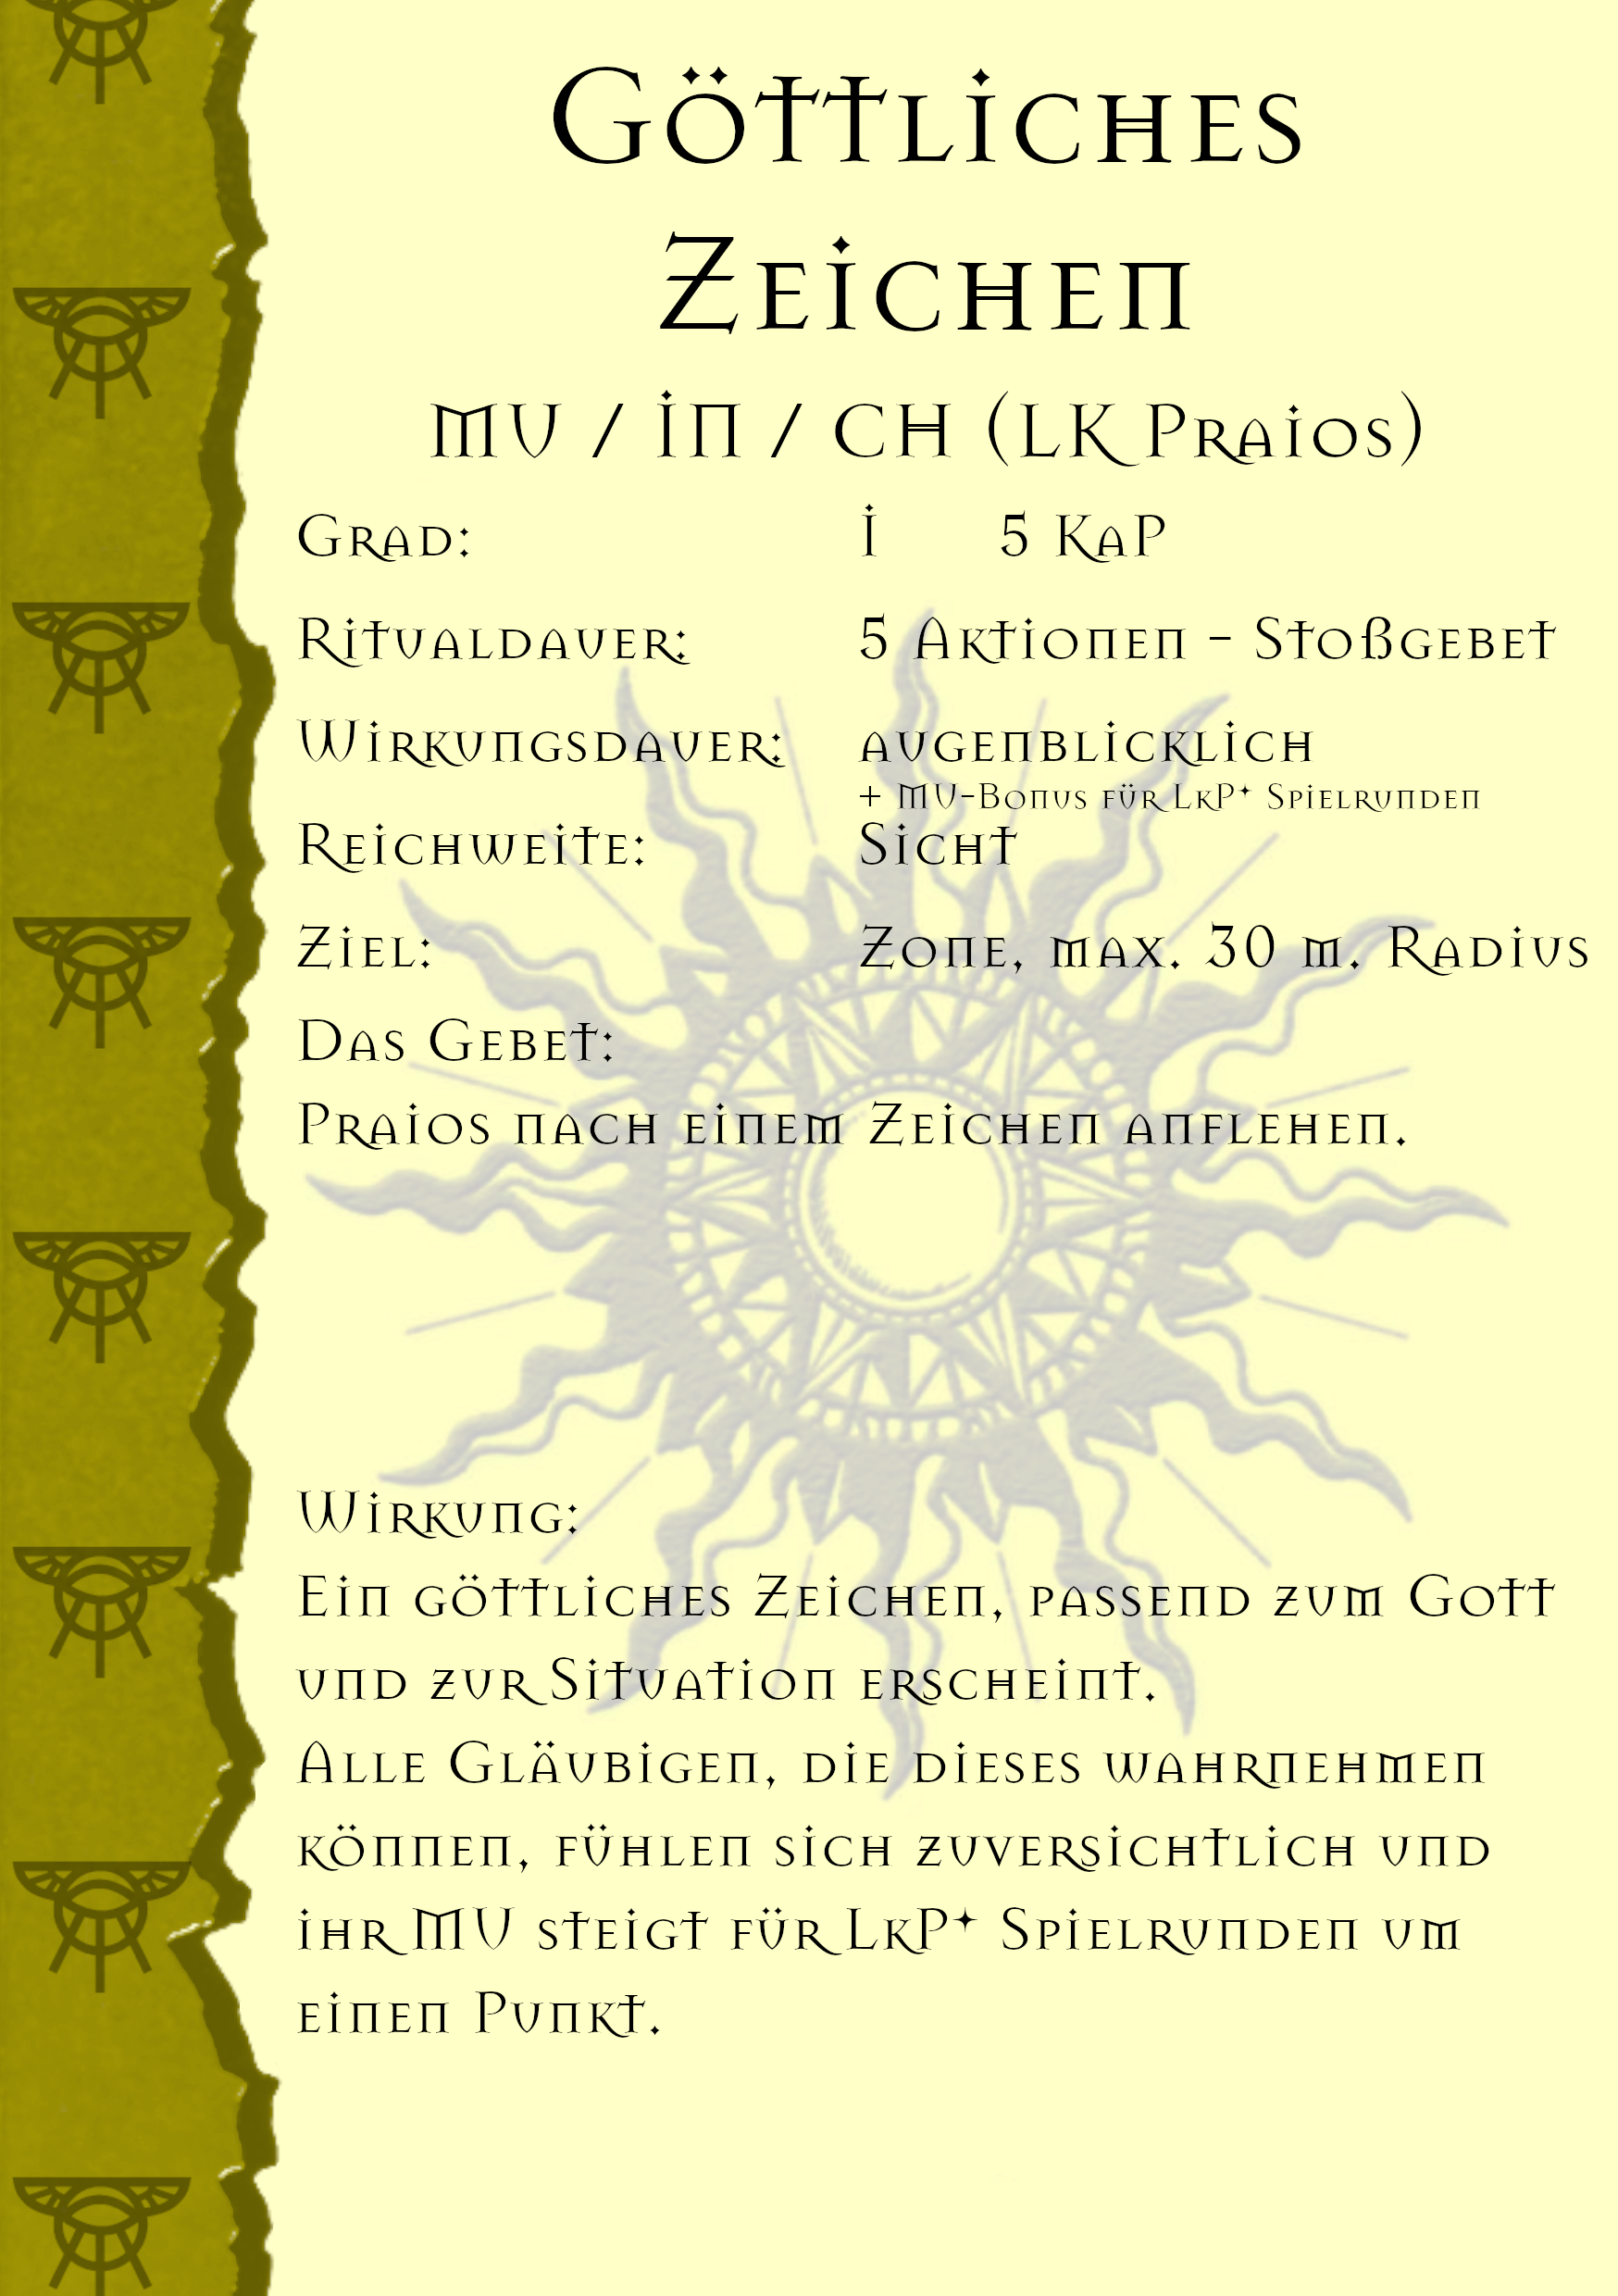 793-gottliches-zeichen.png